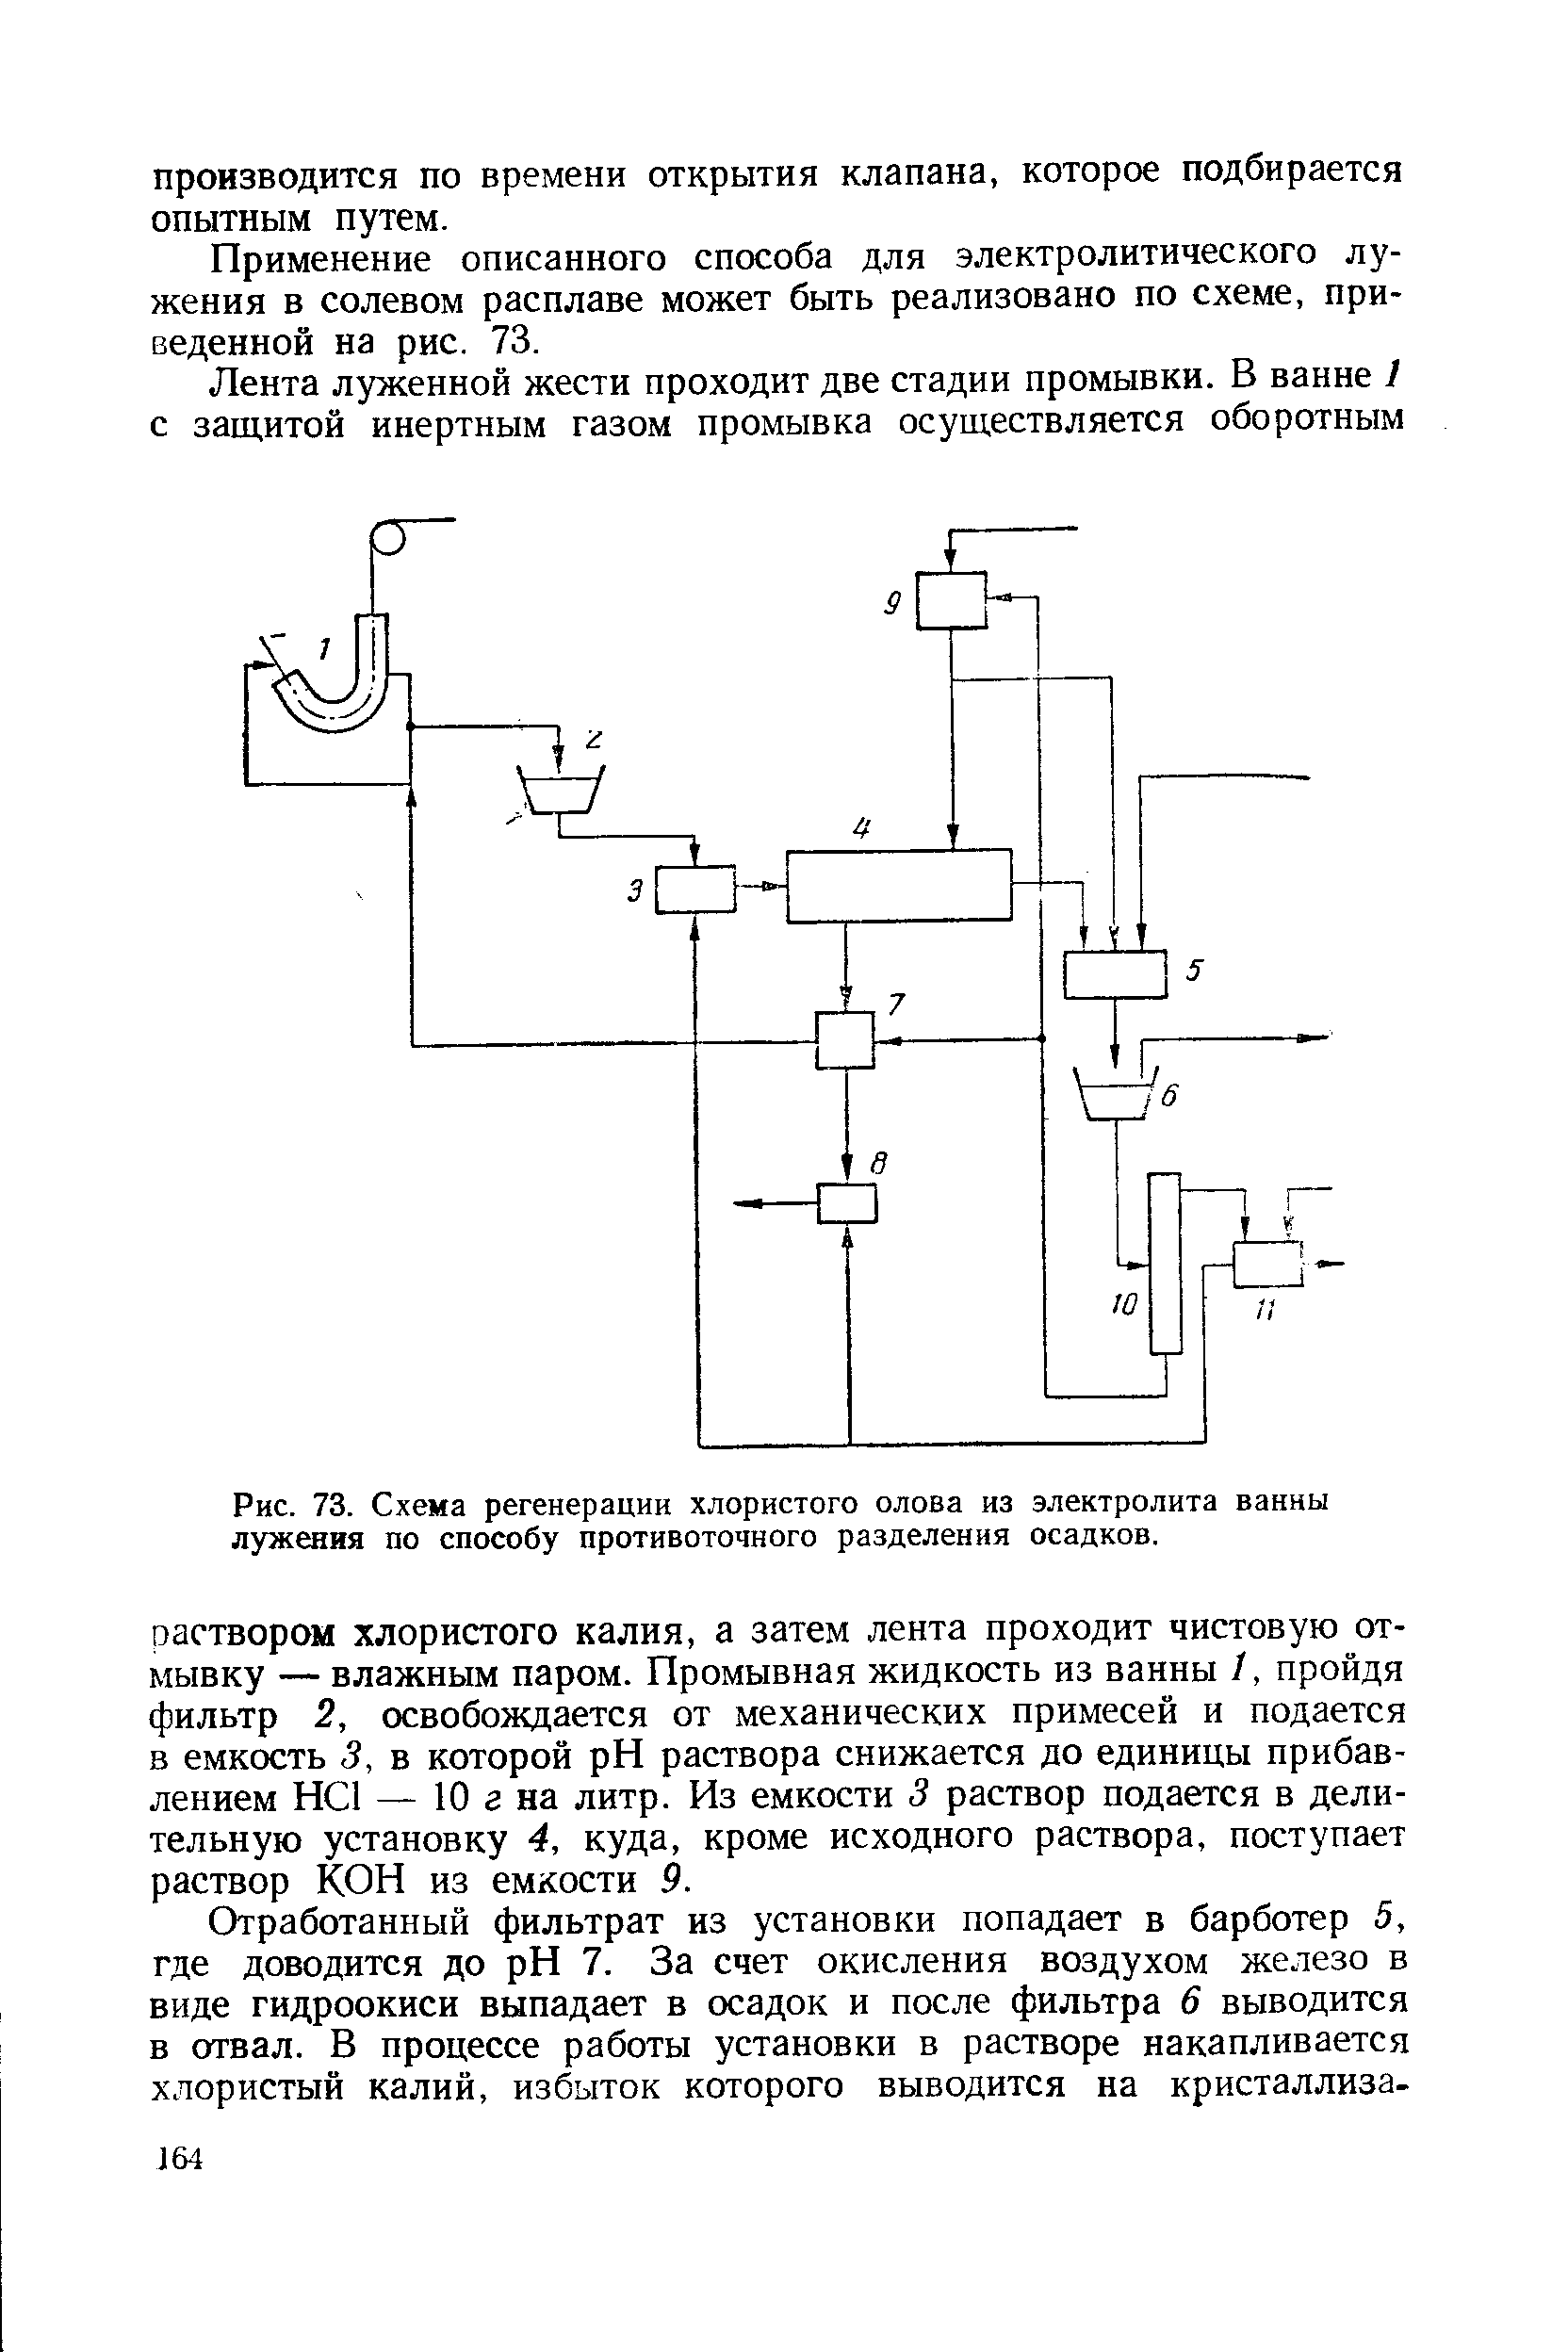 Рис. 73. Схема регенерации <a href="/info/44872">хлористого олова</a> из электролита ванны лужения по способу противоточного разделения осадков.
